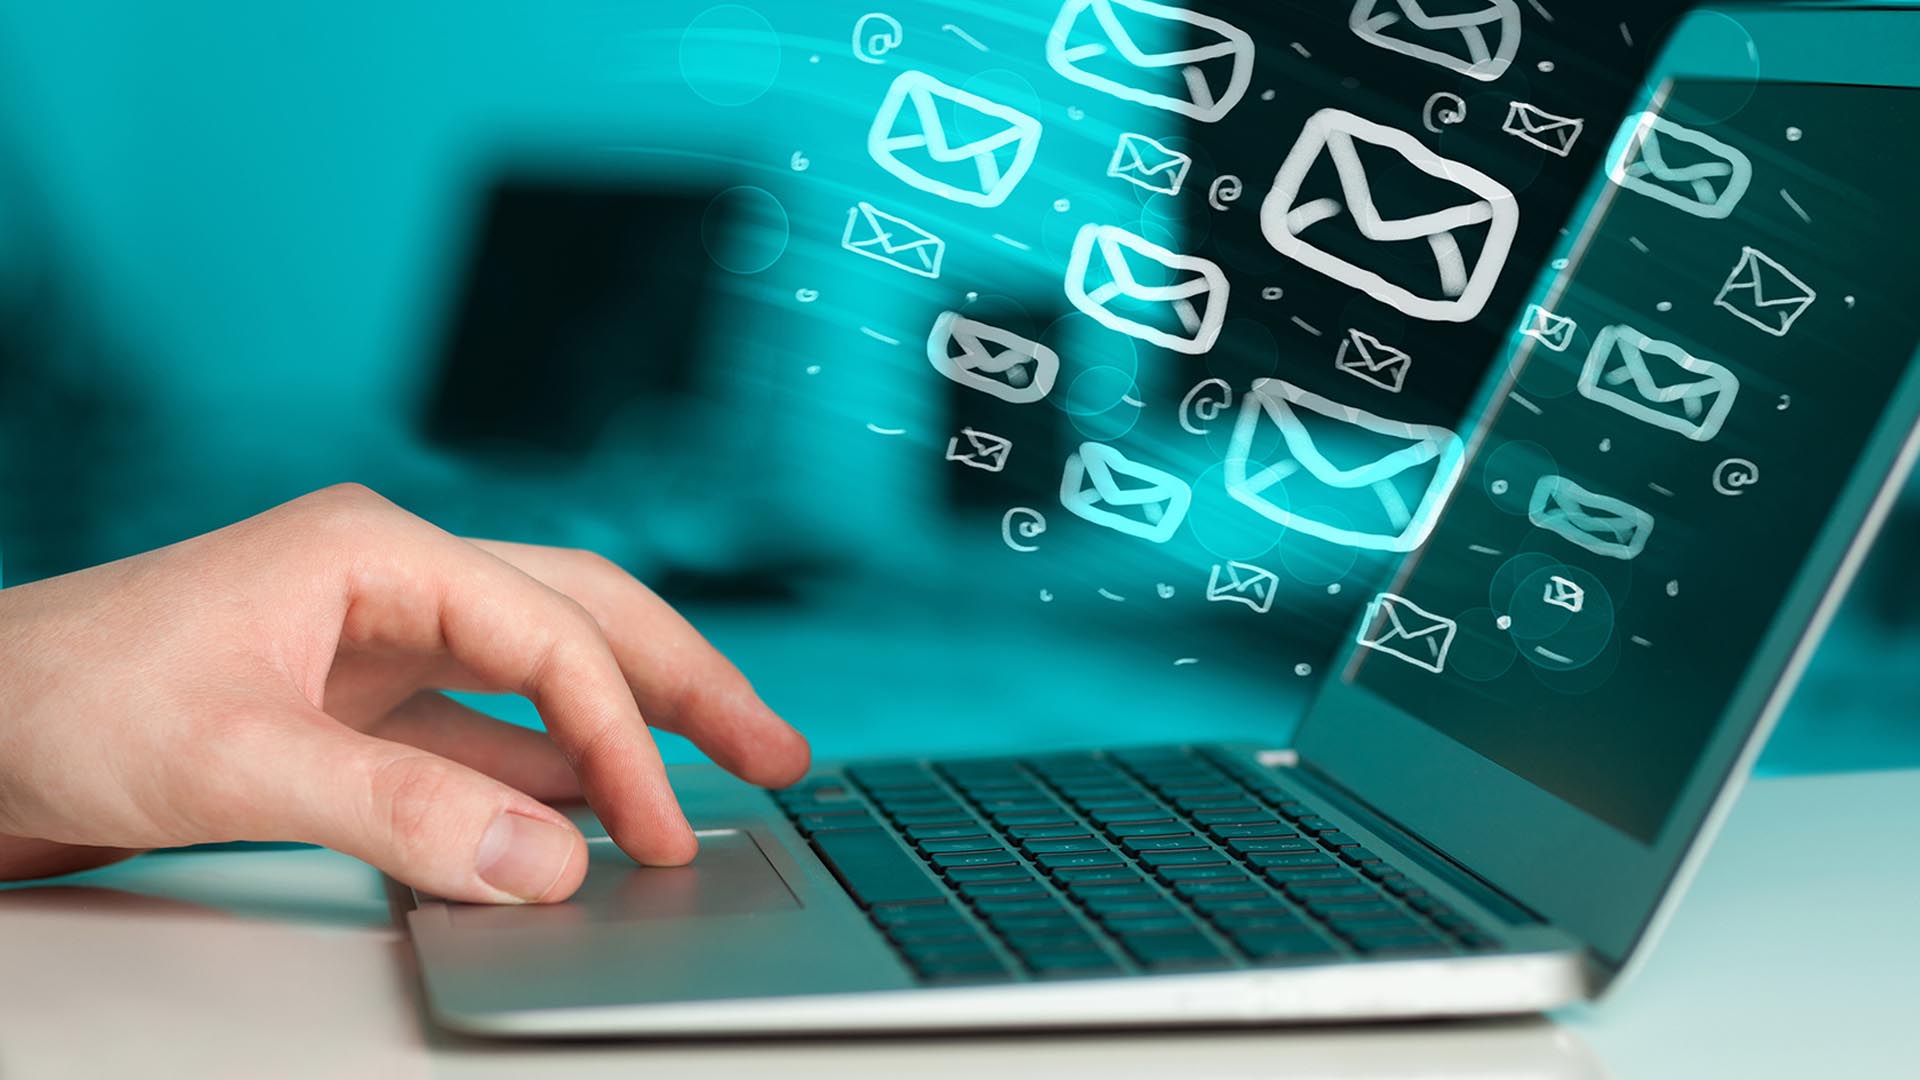 Aspectos relacionados a la seguridad, dependencia y nuevas formas de comunicación predicen la desaparición de los emails